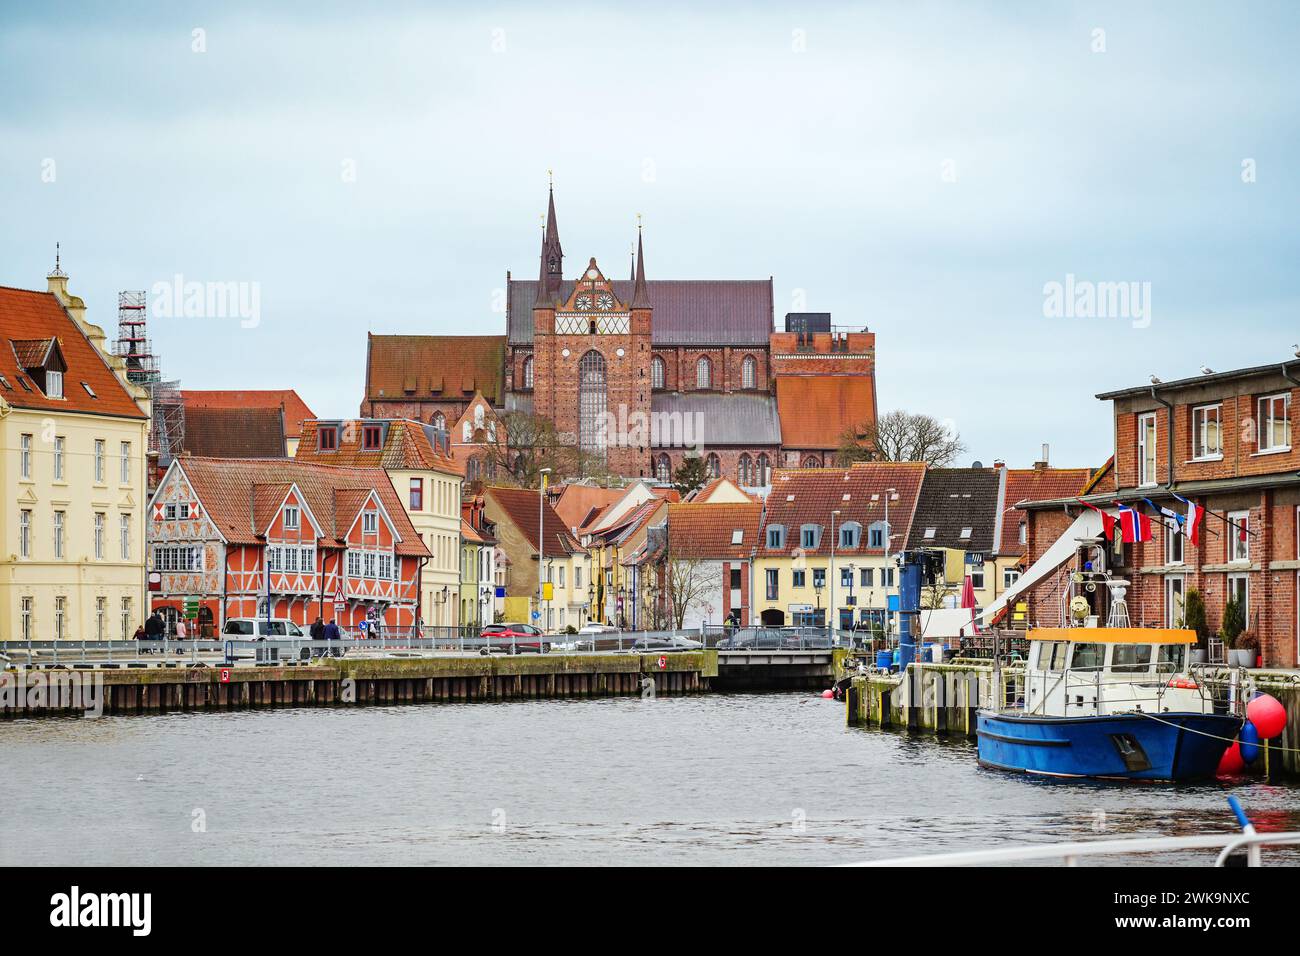 Hafen in der Altstadt der hansestadt Wismar, Blick auf historische Häuser und die aus rotem Backstein gefertigte Georg-Kirche, Reiseziel und Touristenmagnet Stockfoto